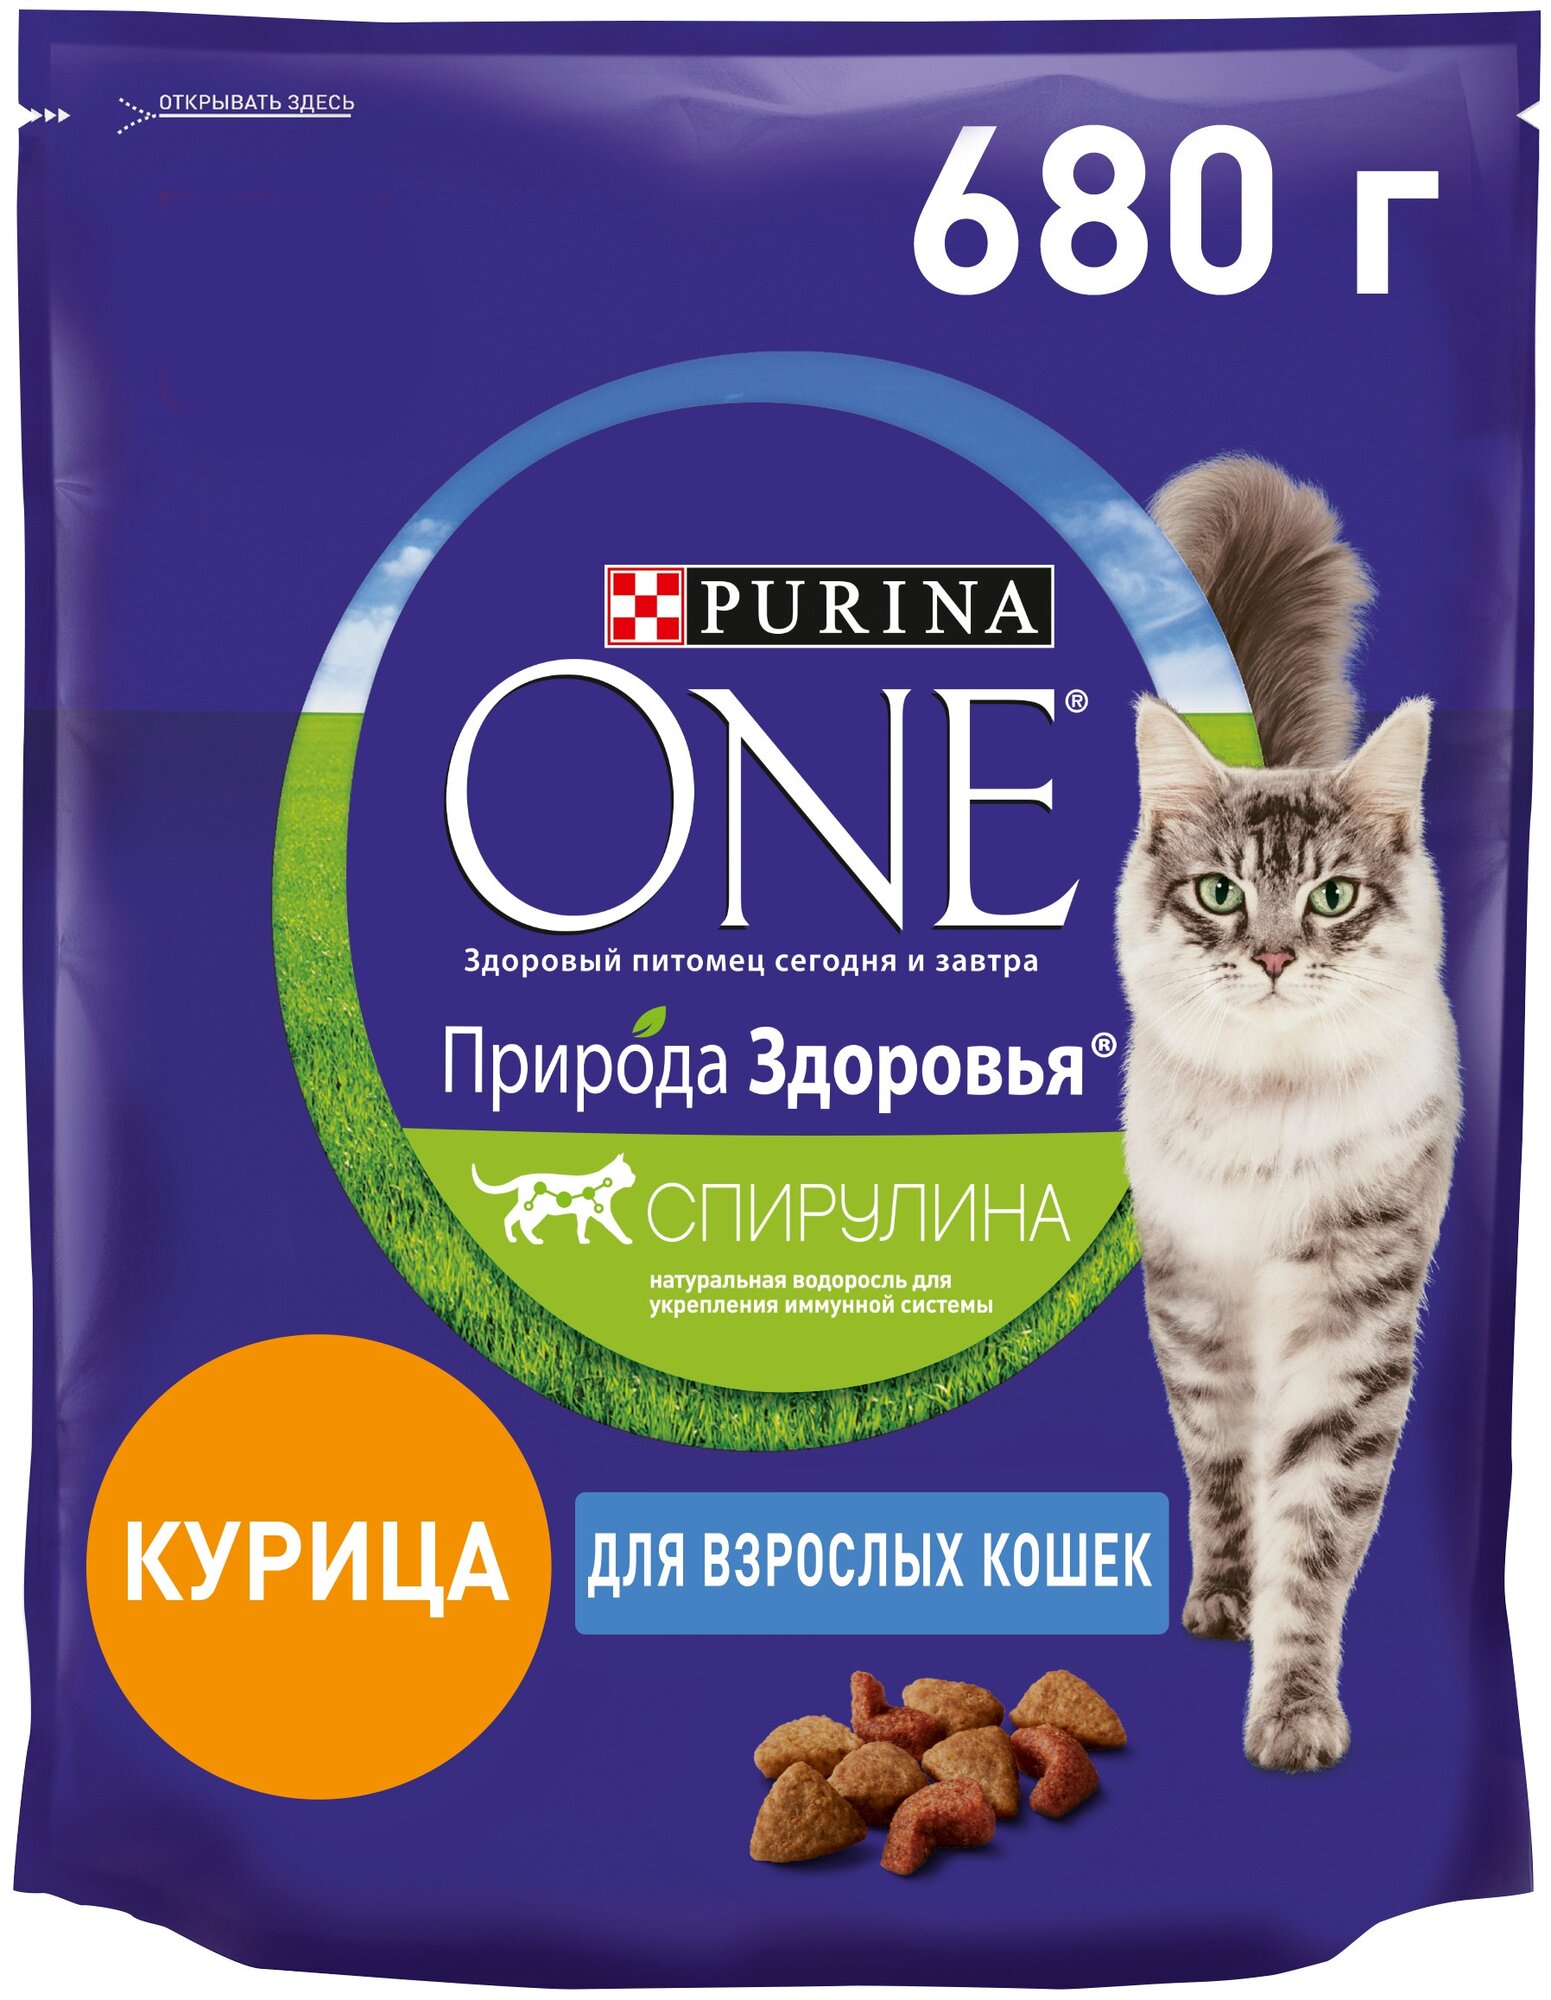 Сухой корм Purina ONE Природа Здоровья для кошек с Курицей пакет 680г, для взрослых кошек